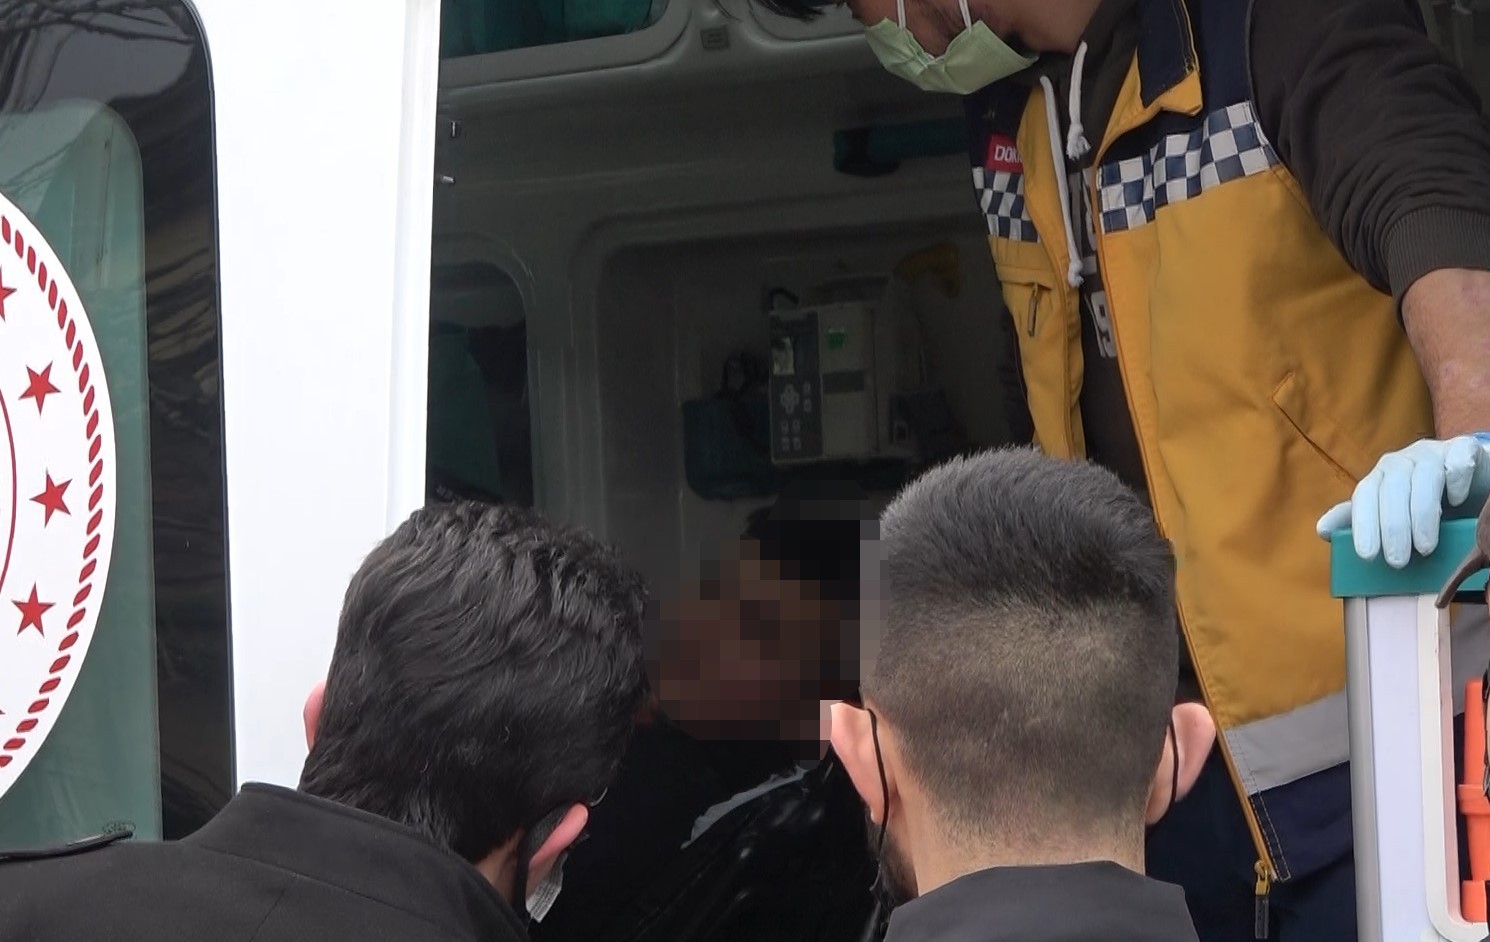 Mesleki eğitim merkezi öğrencisi bıçakla yaralandı #kocaeli